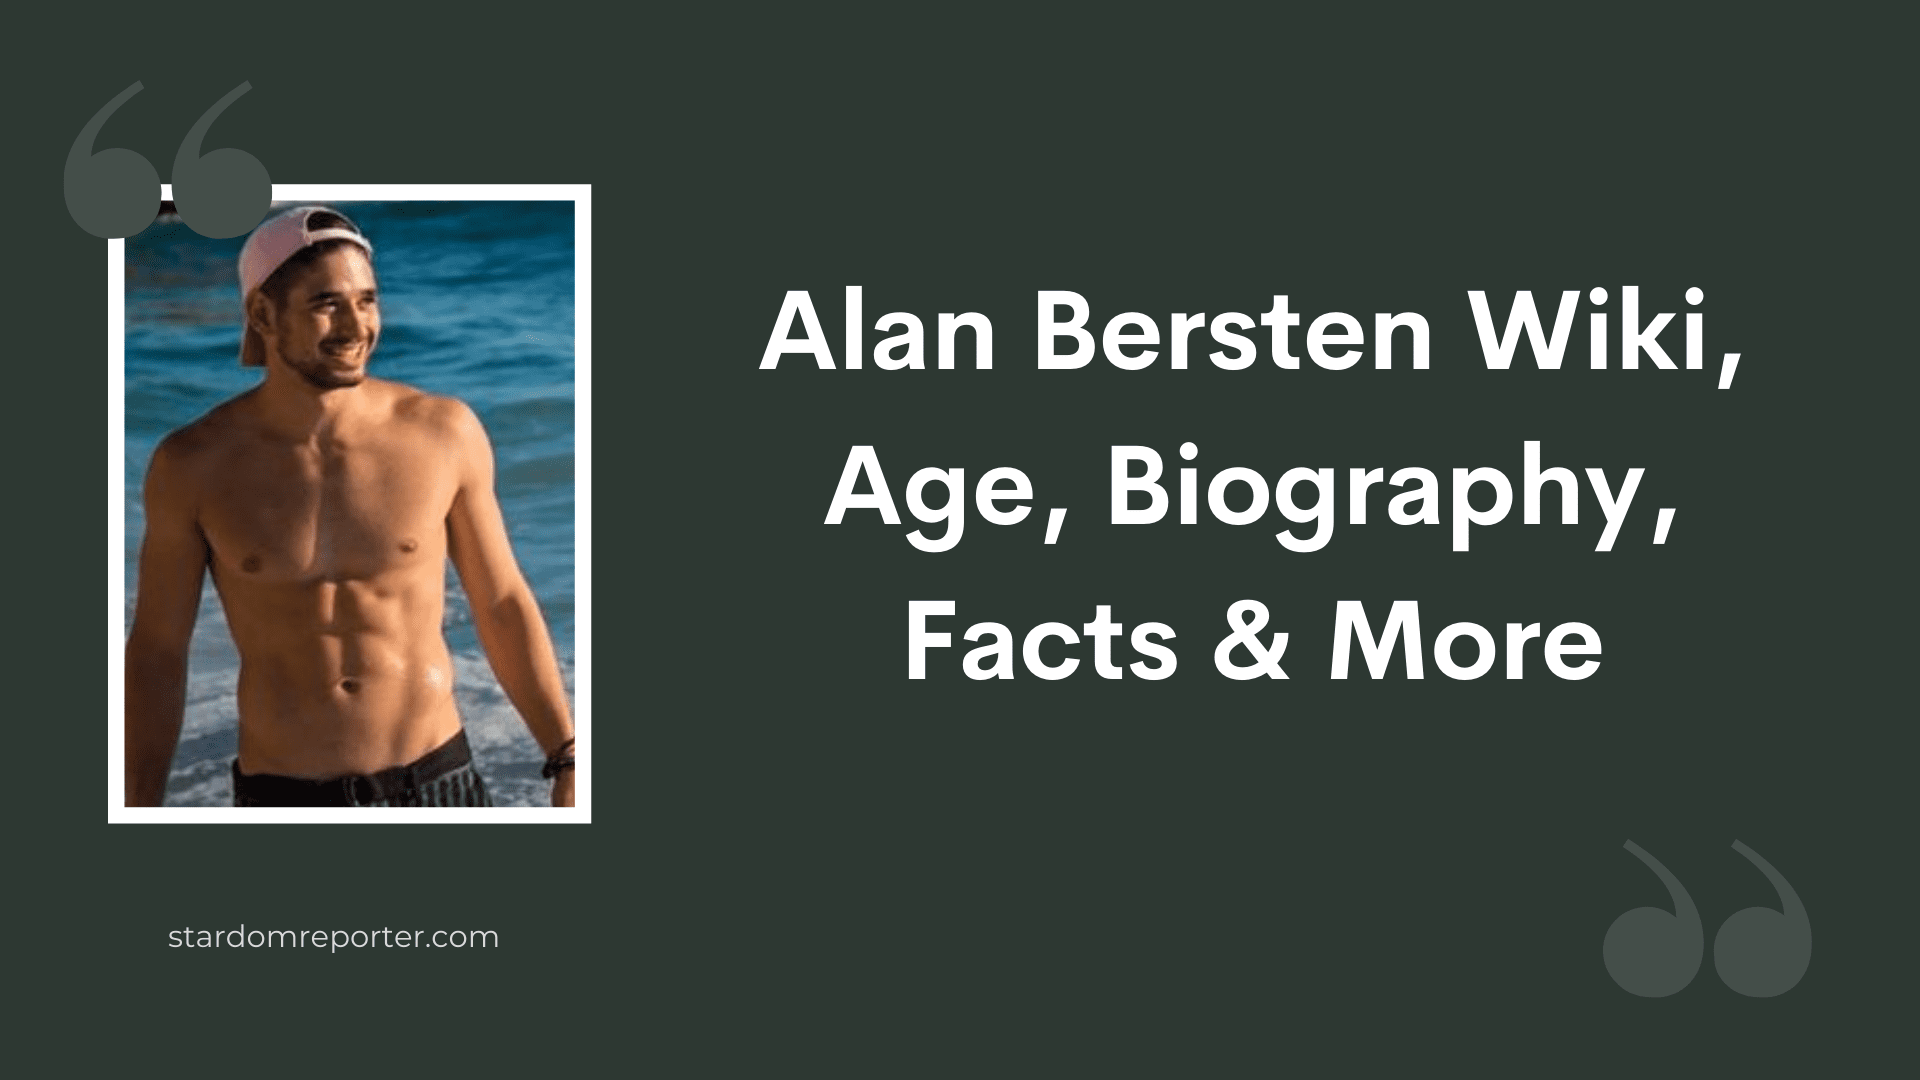 Alan Bersten Wiki, Age, Bio, Girlfriends, Net Worth, Facts & More - 37